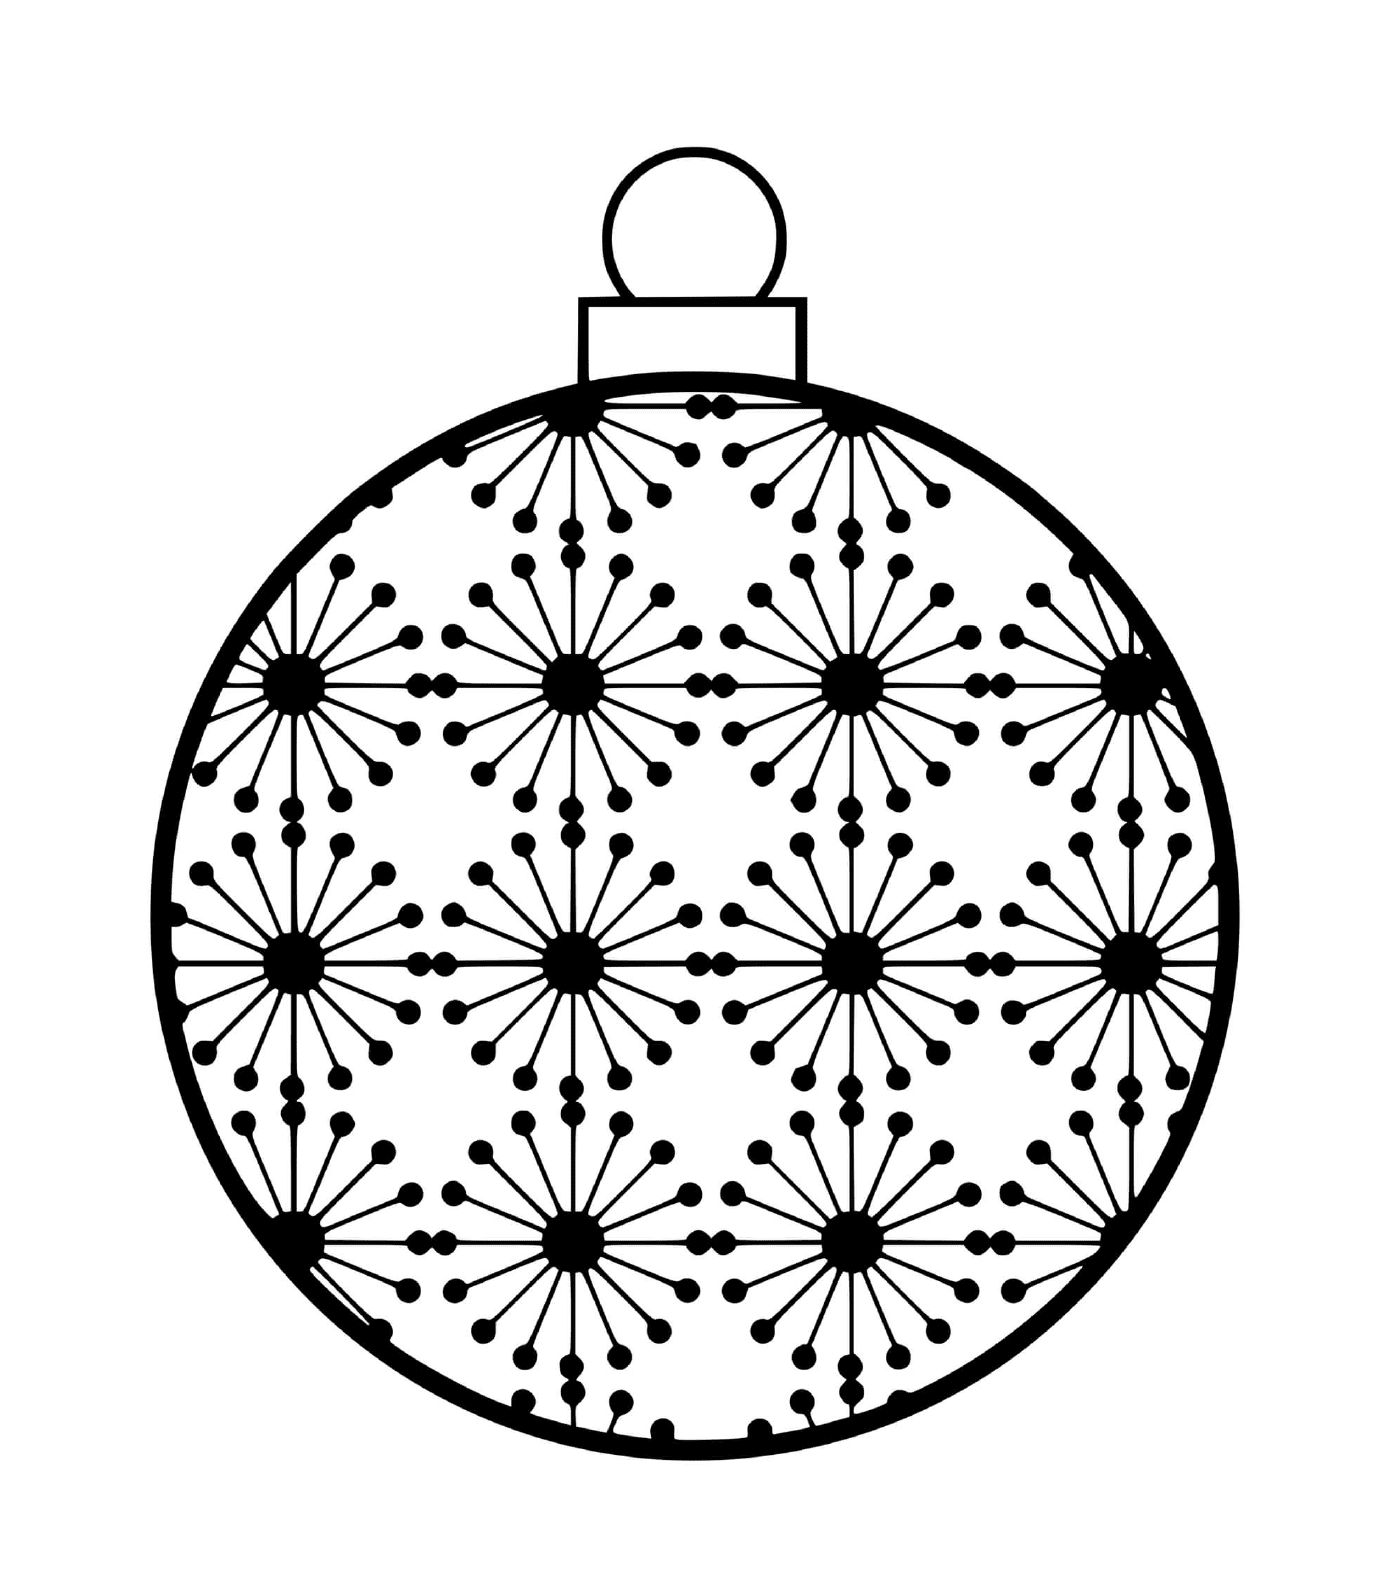  Ein Weihnachtsball mit wissenschaftlichen Mustern von Atomen 